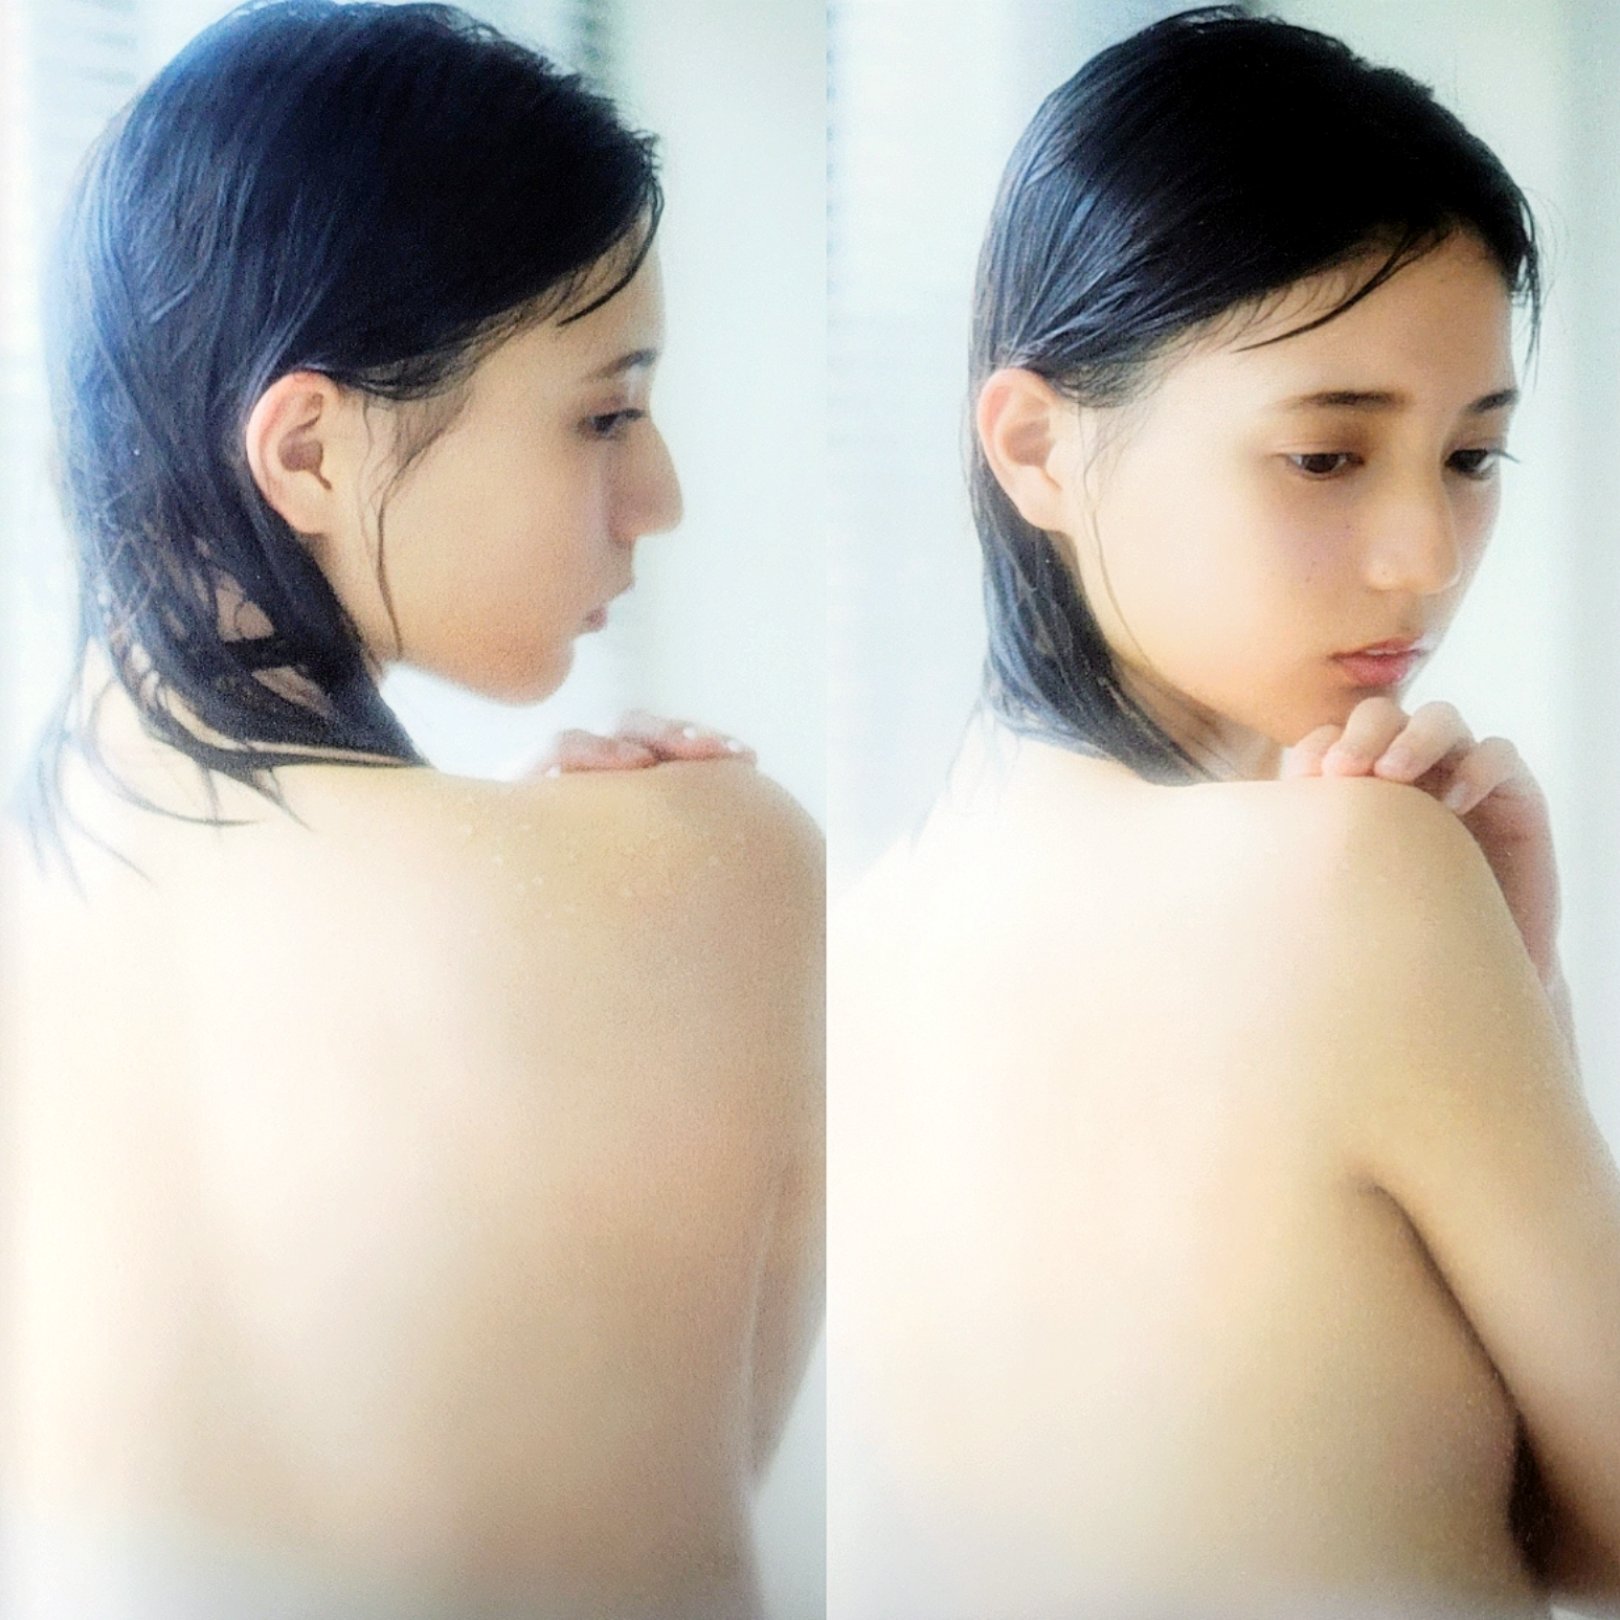 18歳で日向坂46のエース小坂菜緒が写真集で全裸になったセミヌード解禁 みんくちゃんねる